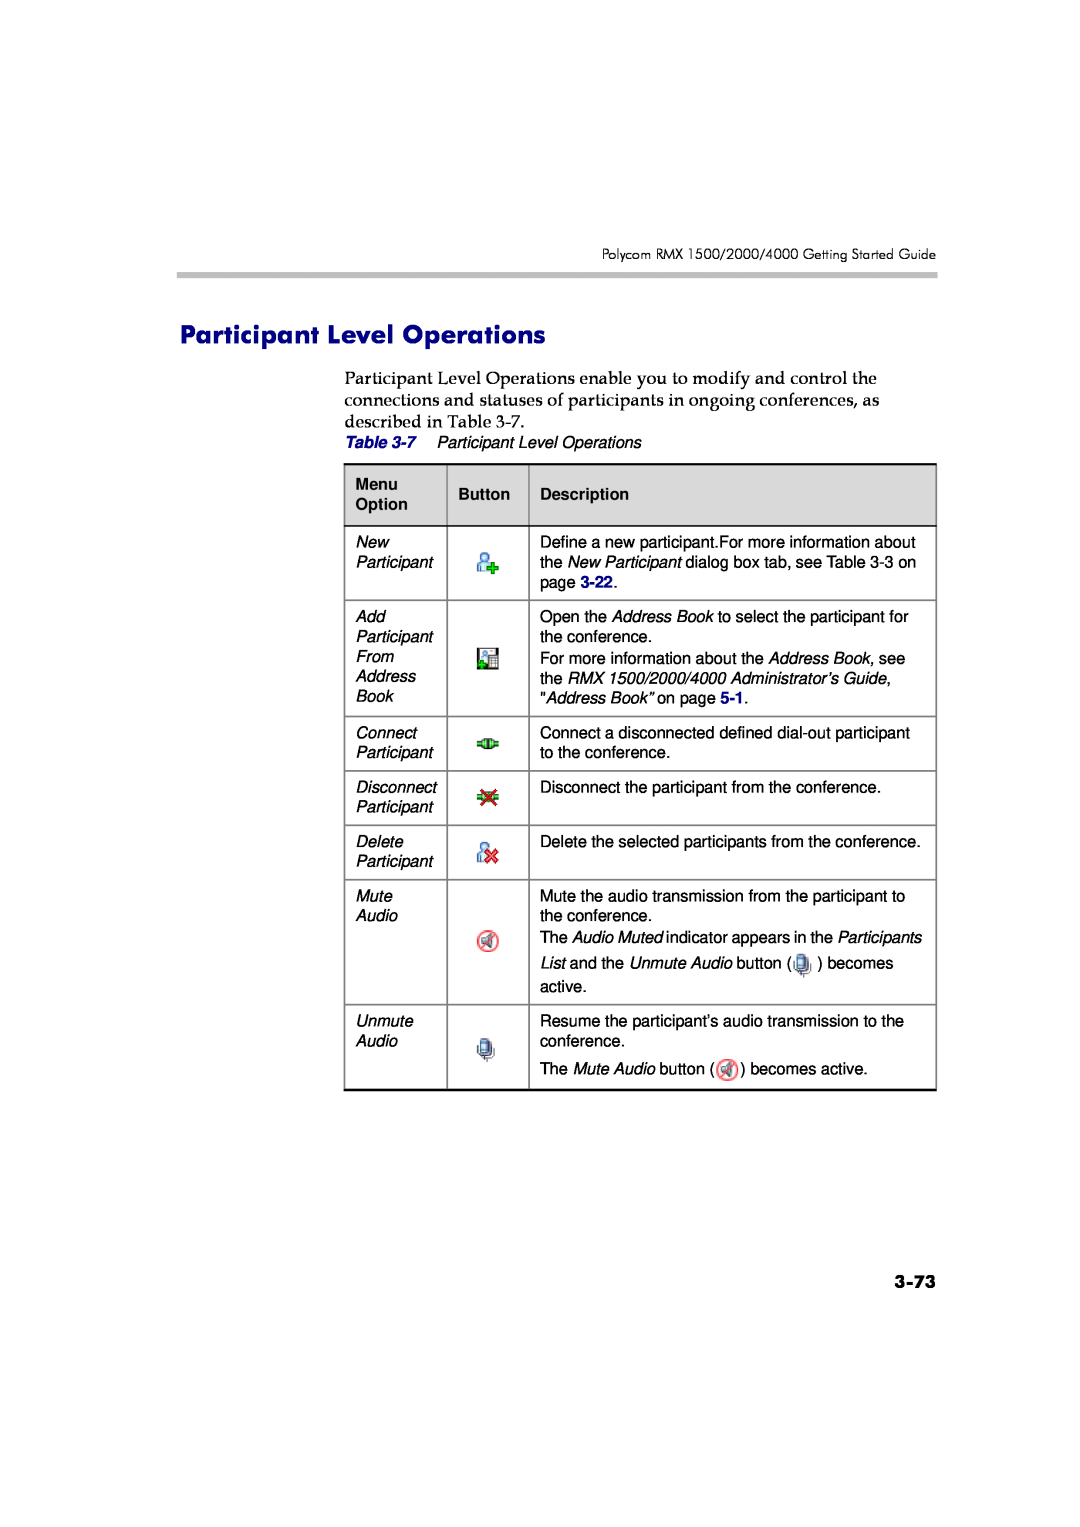 Polycom DOC2560A manual Participant Level Operations, 3-73, Menu, Button, Description, Option 